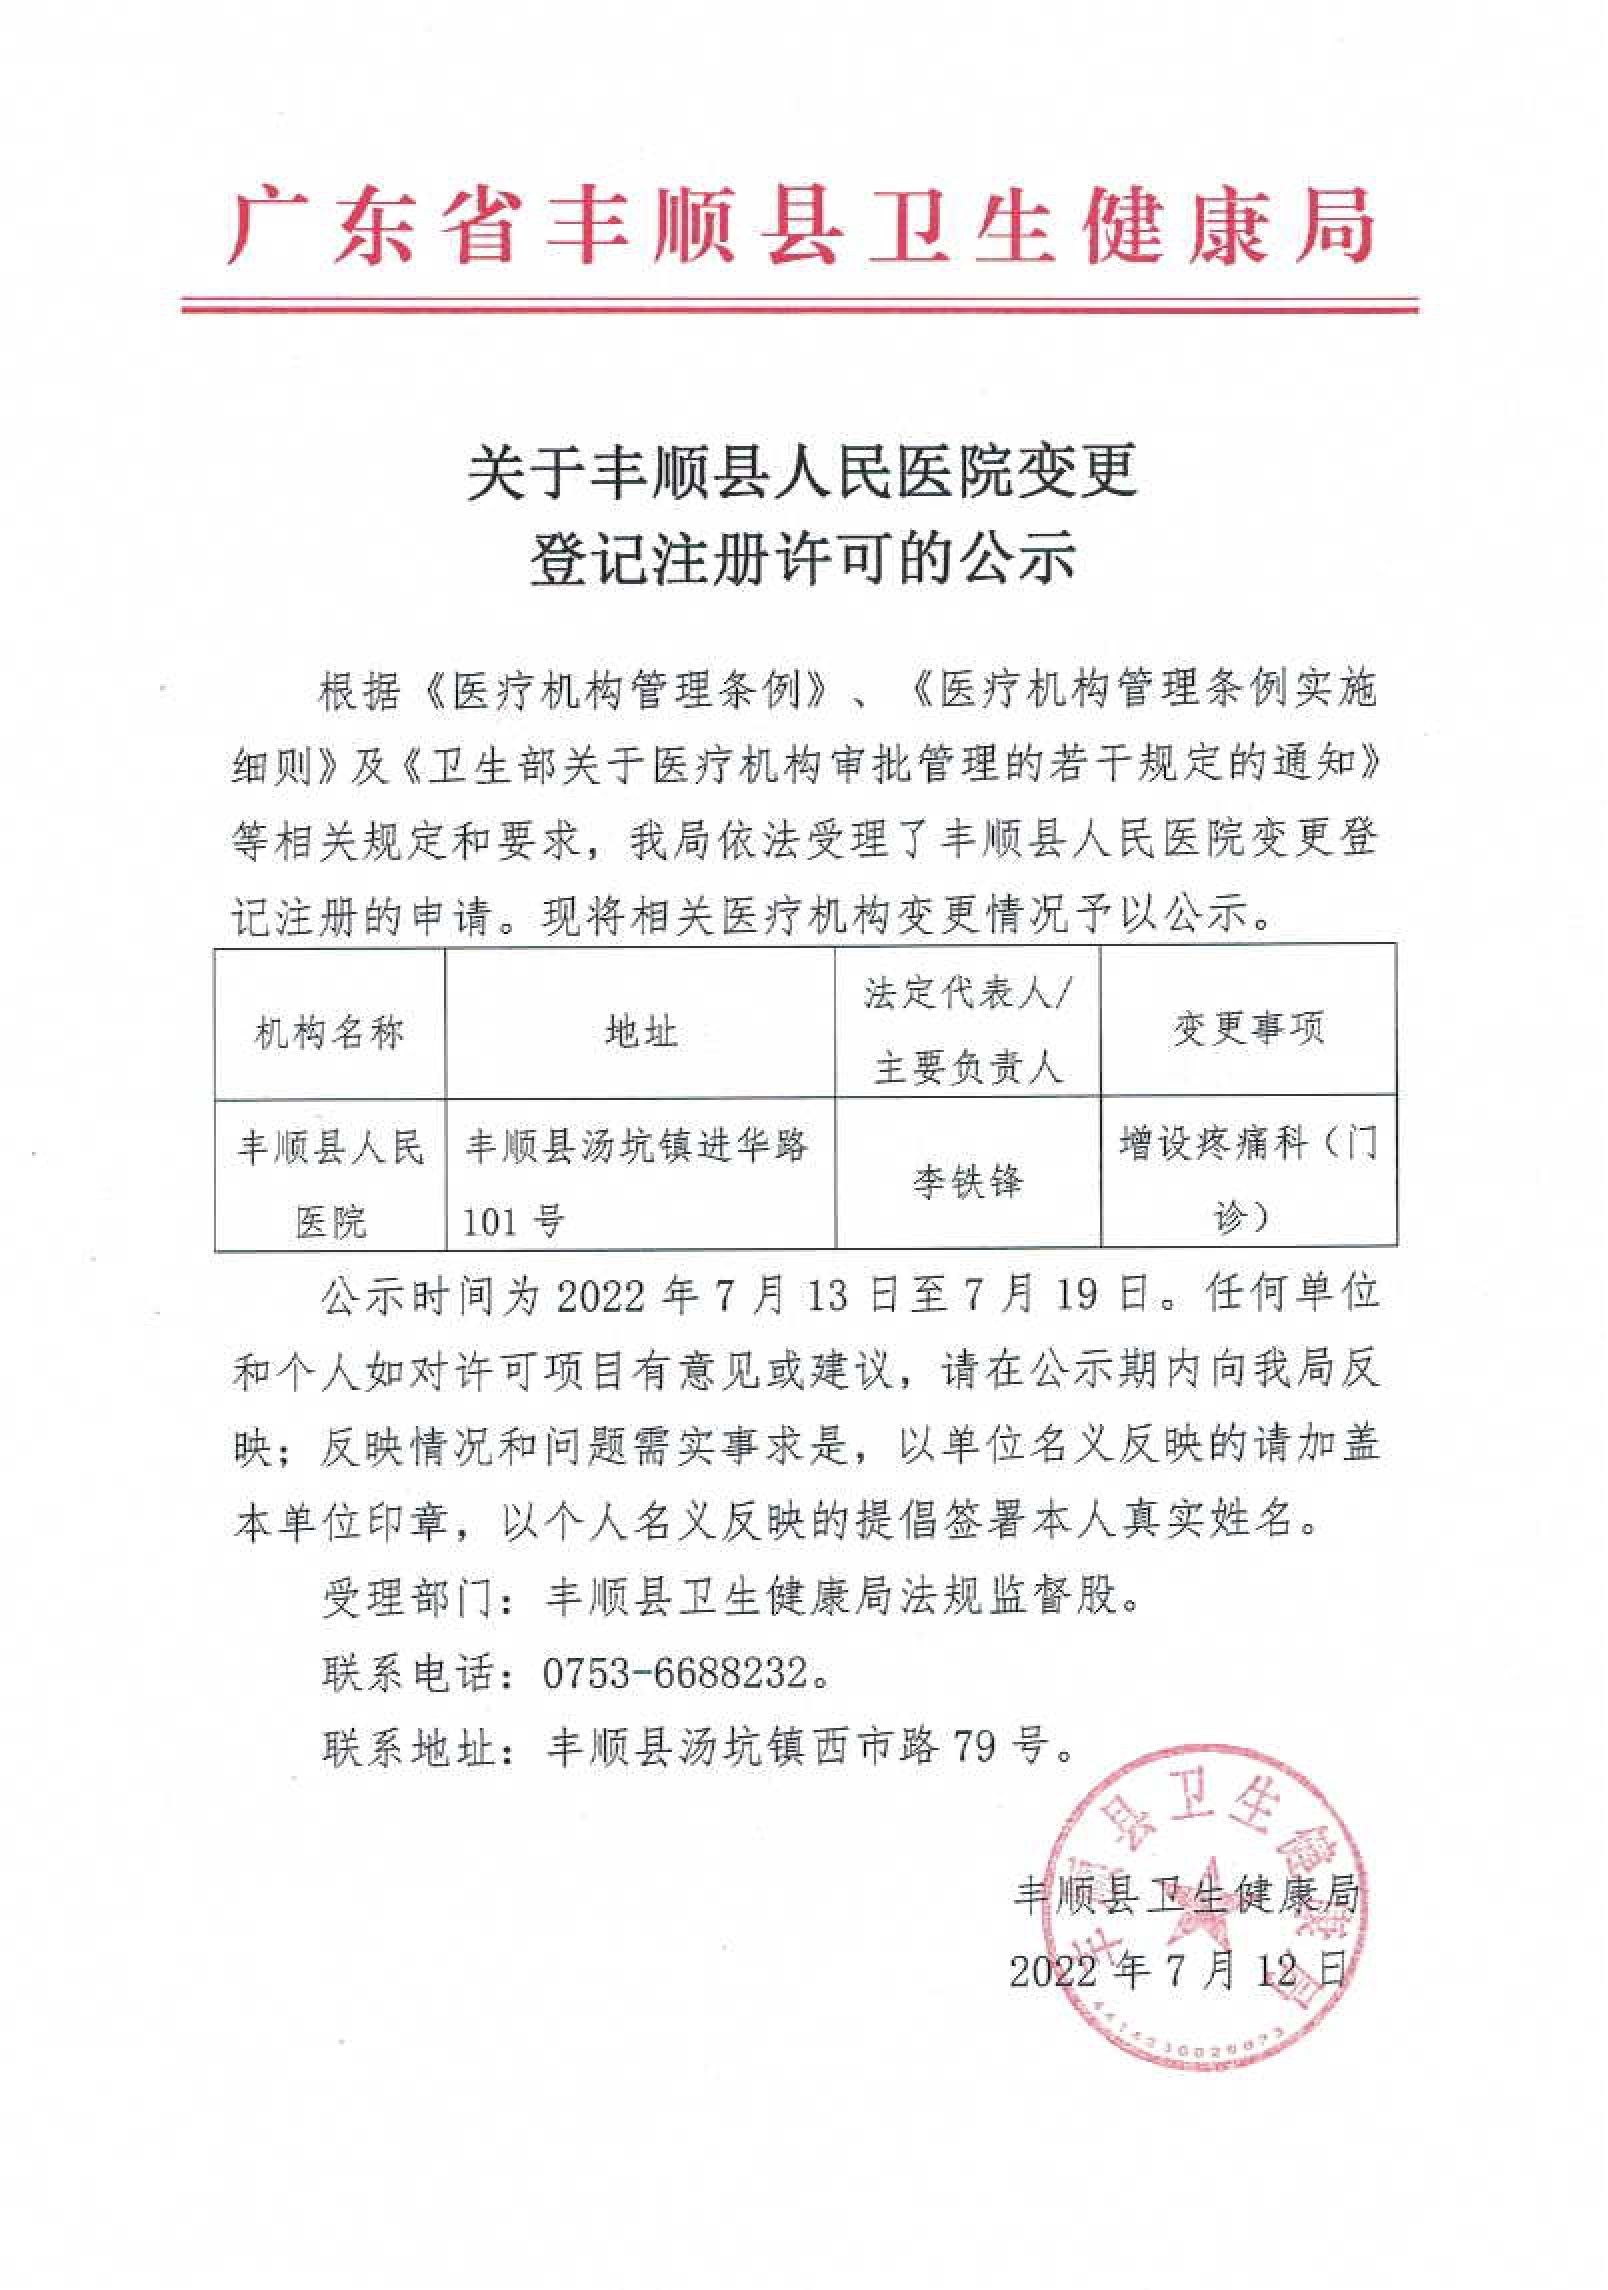 关于丰顺县人民医院变更登记注册许可的公示.jpg